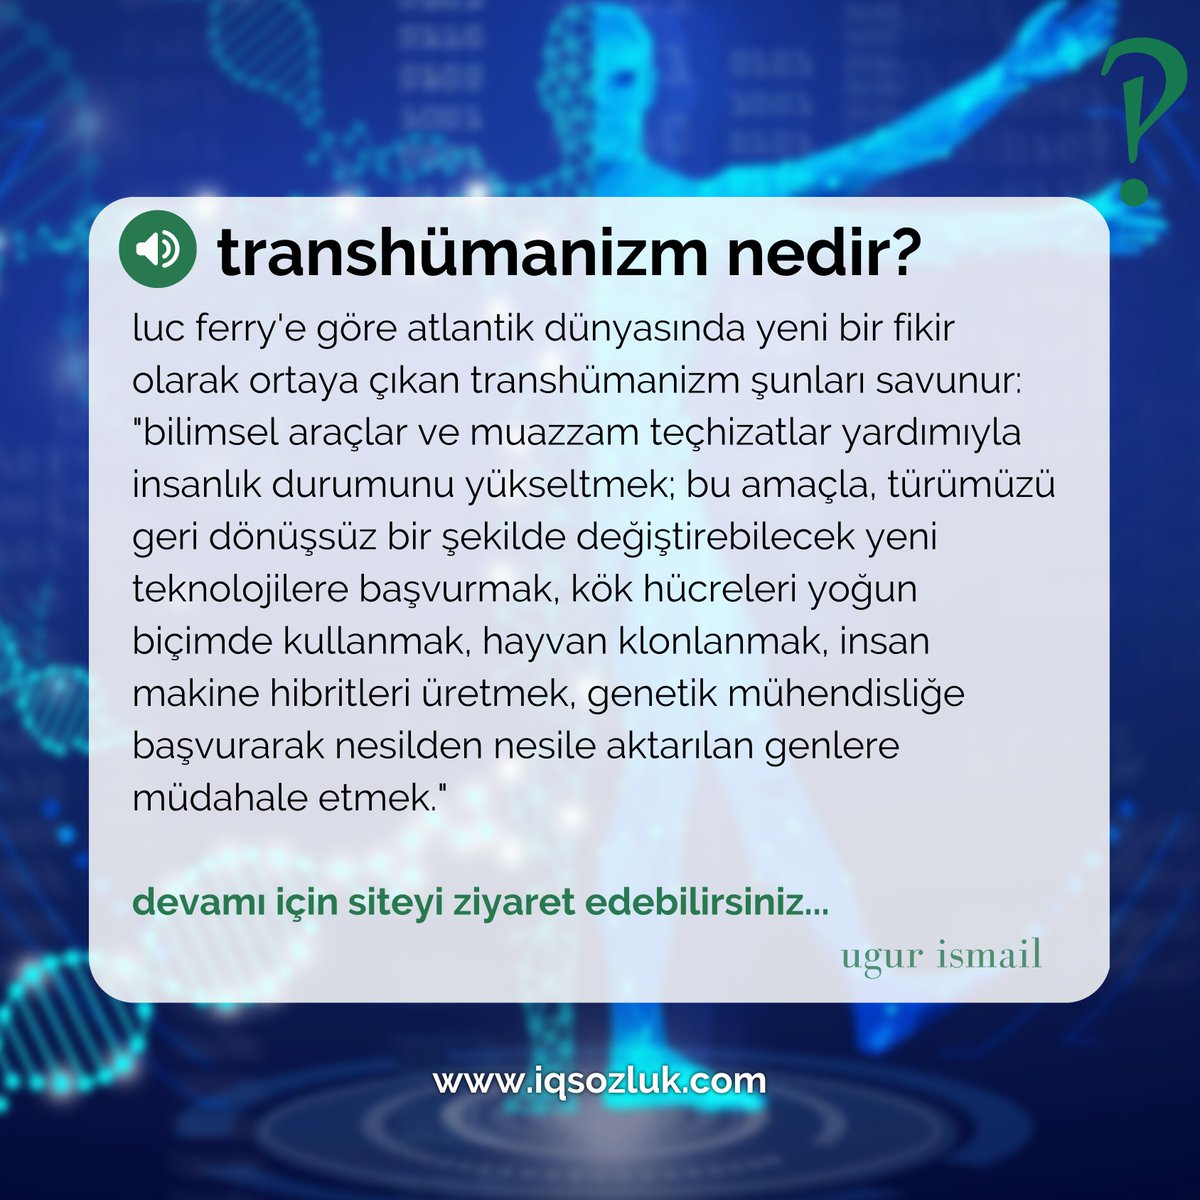 #transhümanizm nedir? ugur ismail @ugurismail__ yanıtladı:

iqsozluk.com/topic/transhum…

#LucFerry #bilimkurgu